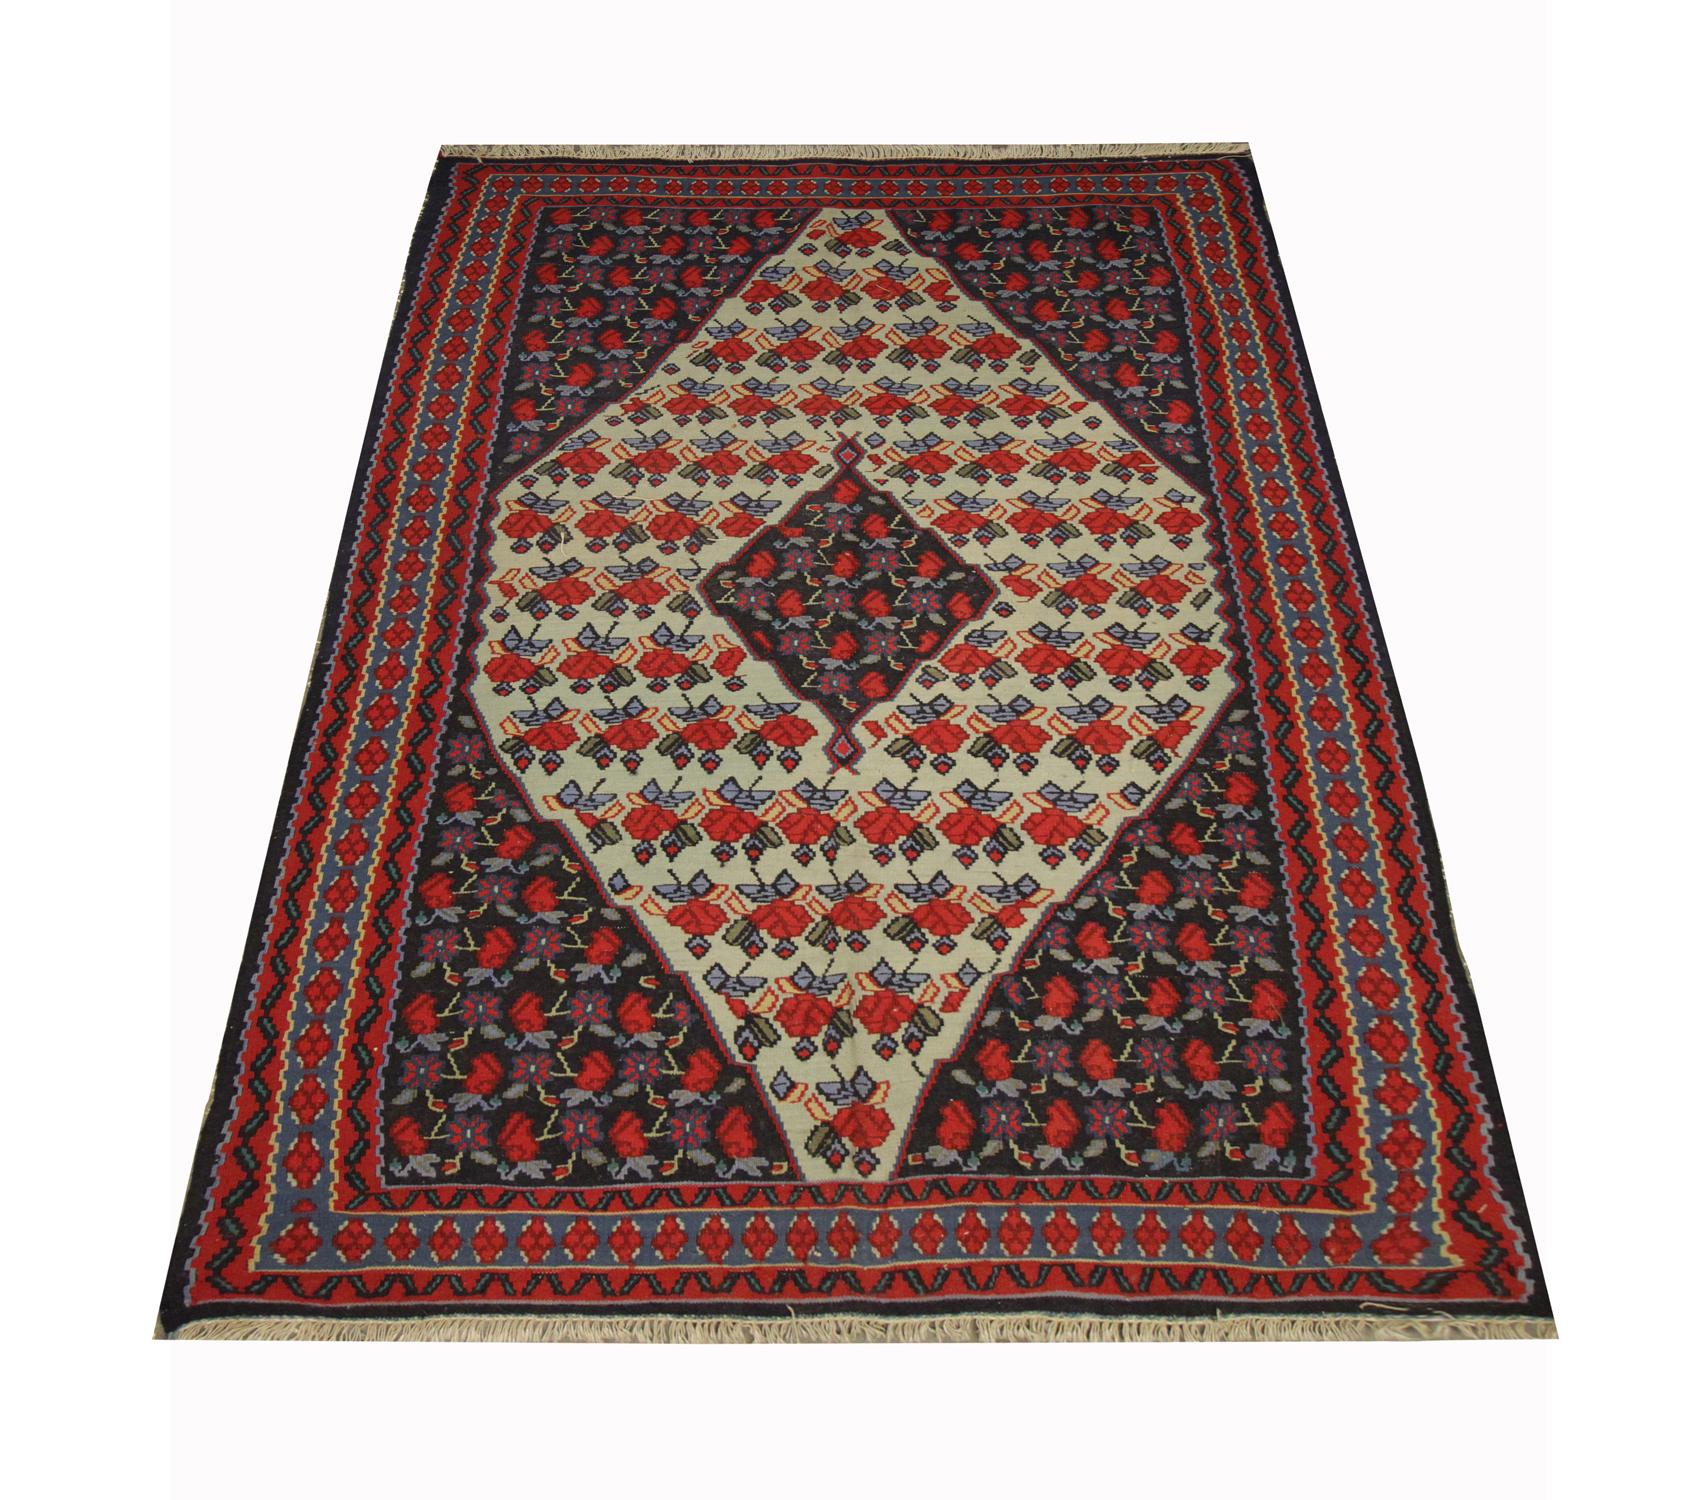 Dieser feine Wollteppich ist ein hervorragendes Beispiel für Kilims, die in den 1960er Jahren in Aserbaidschan von Hand gewebt wurden. Das Design zeigt traditionelle Muster und Farben der kaukasischen Kelims mit Blumen und einem rautenförmigen